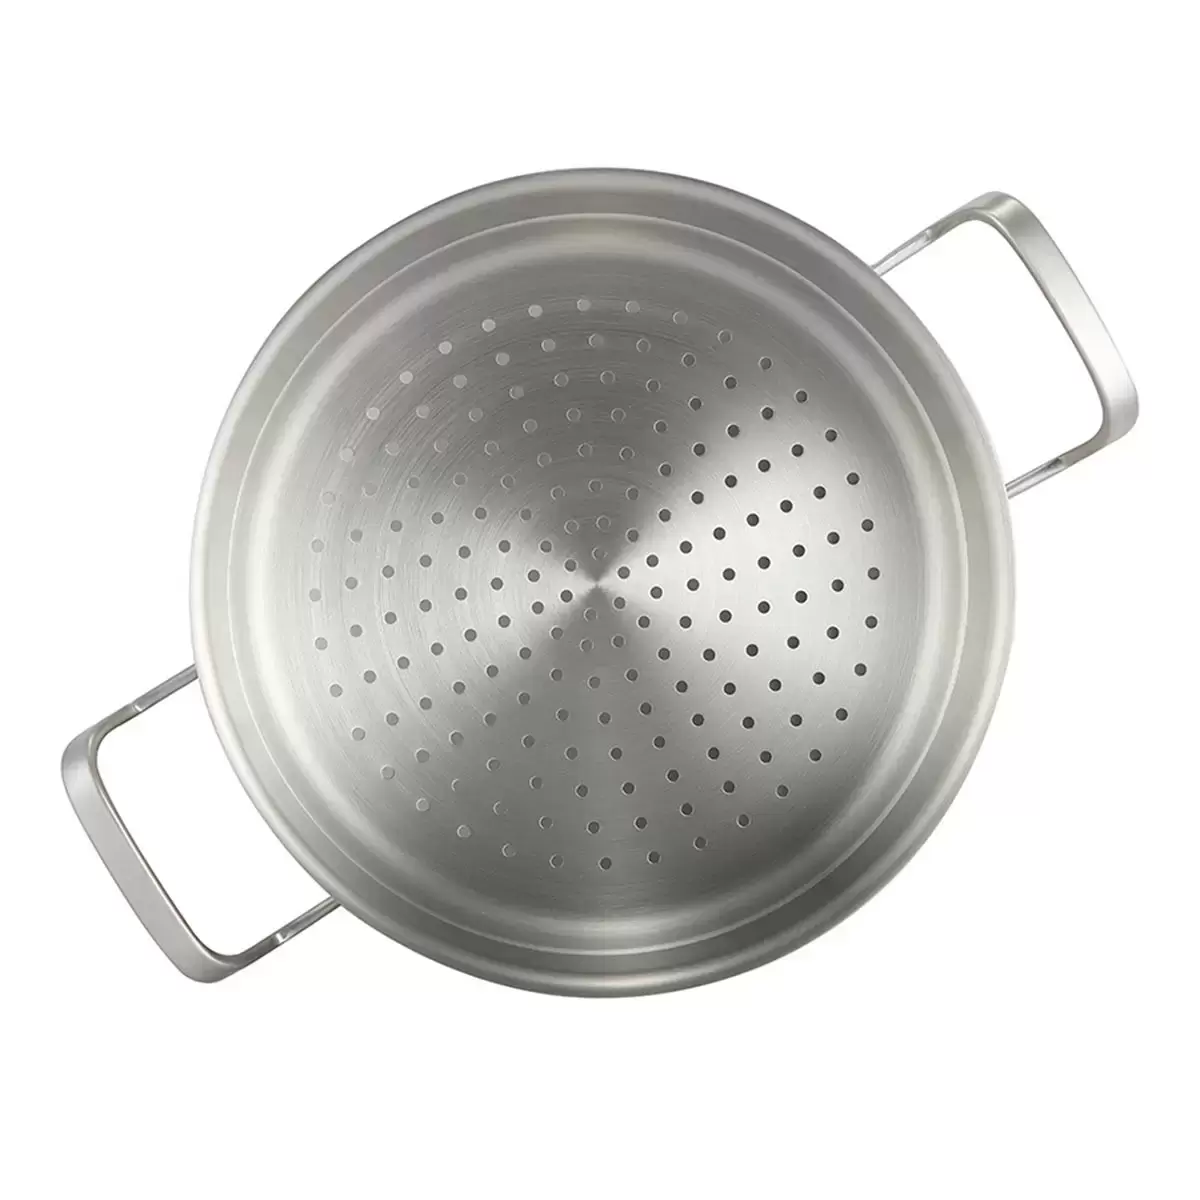 不鏽鋼湯鍋含蓋附蒸籠 24公分